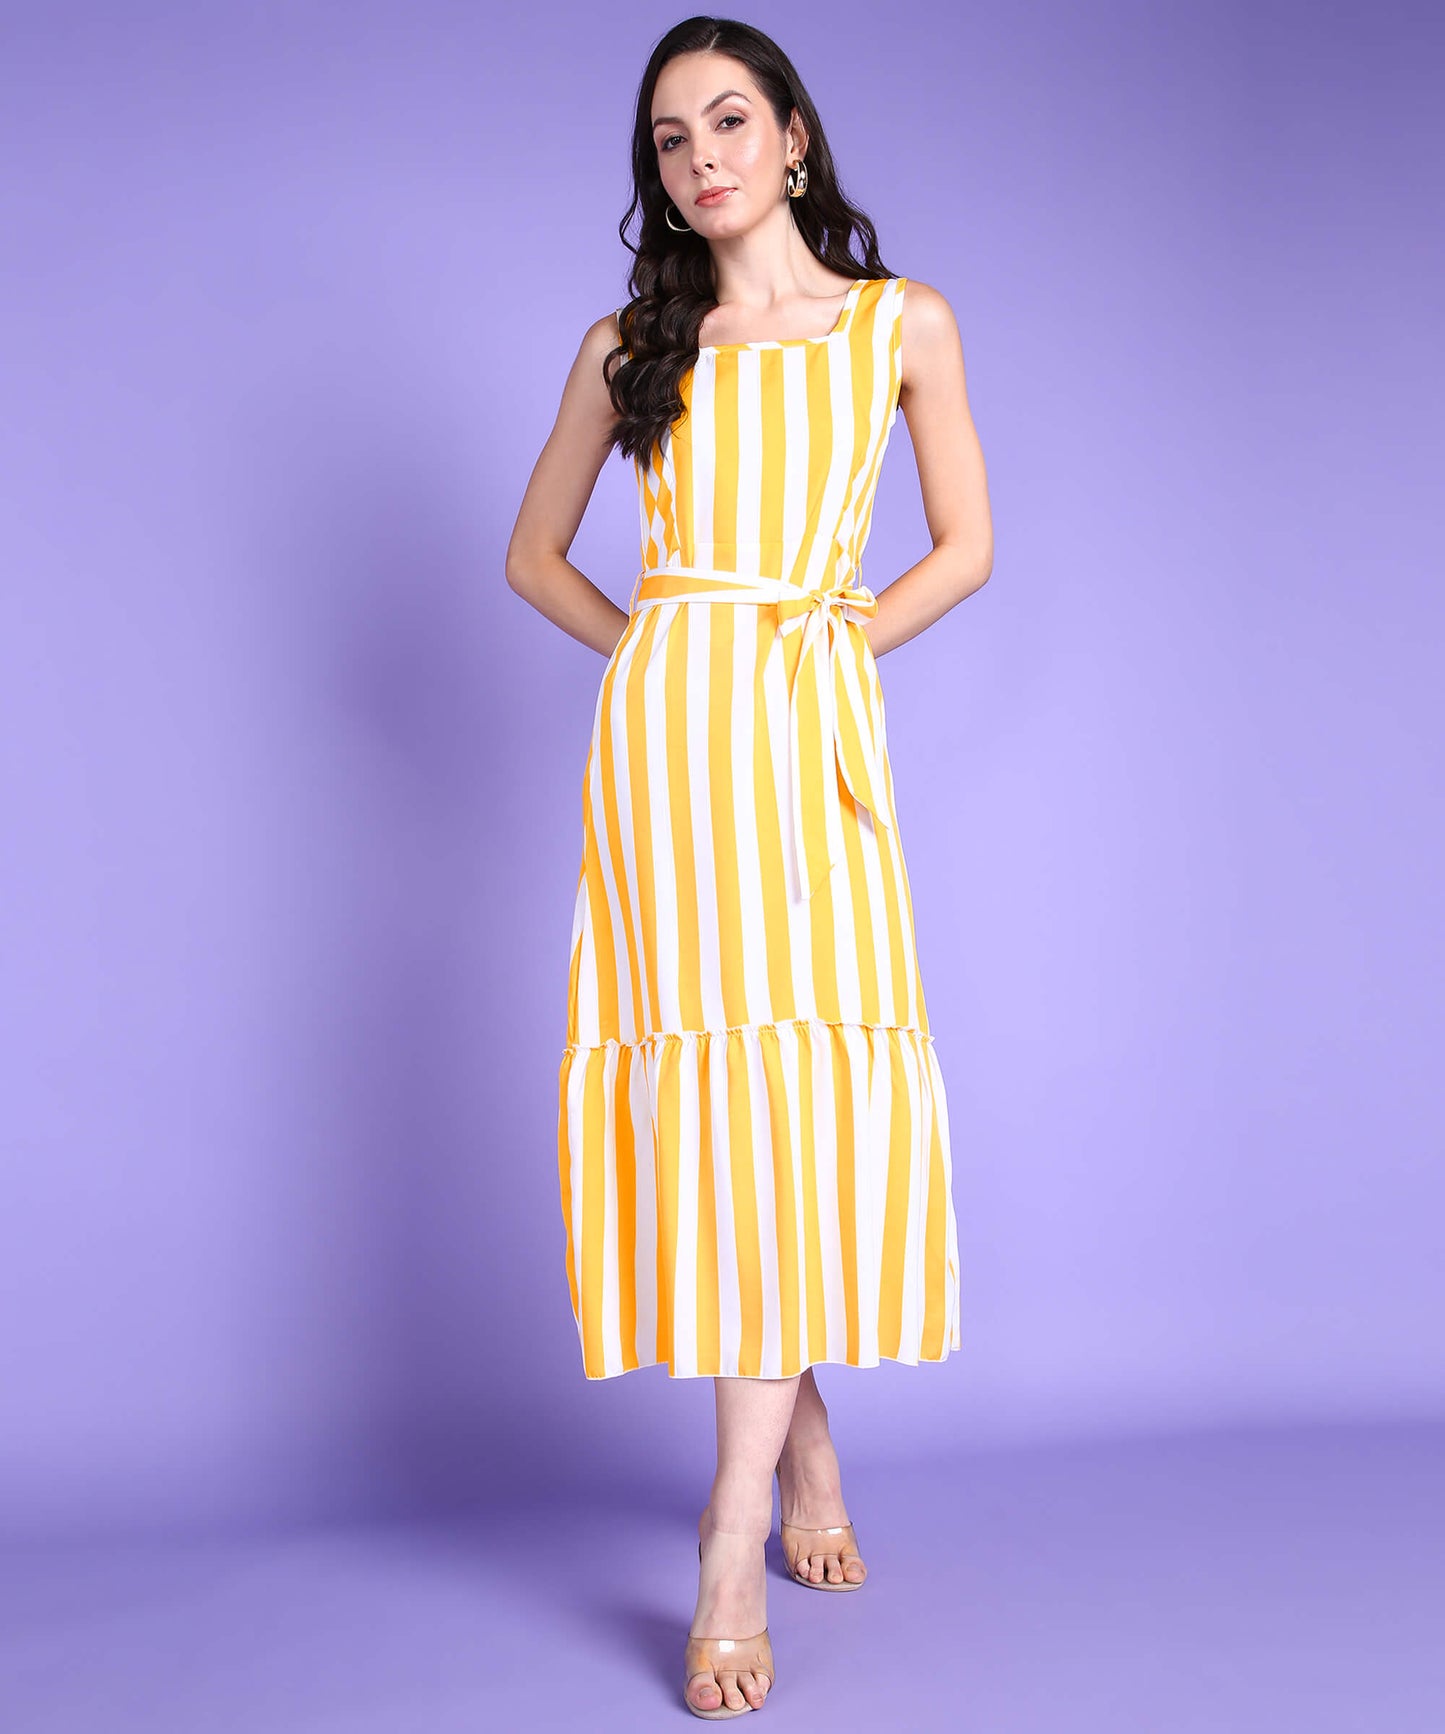 Popwings Women Casual Yellow & White Stripe Long Belt Dress